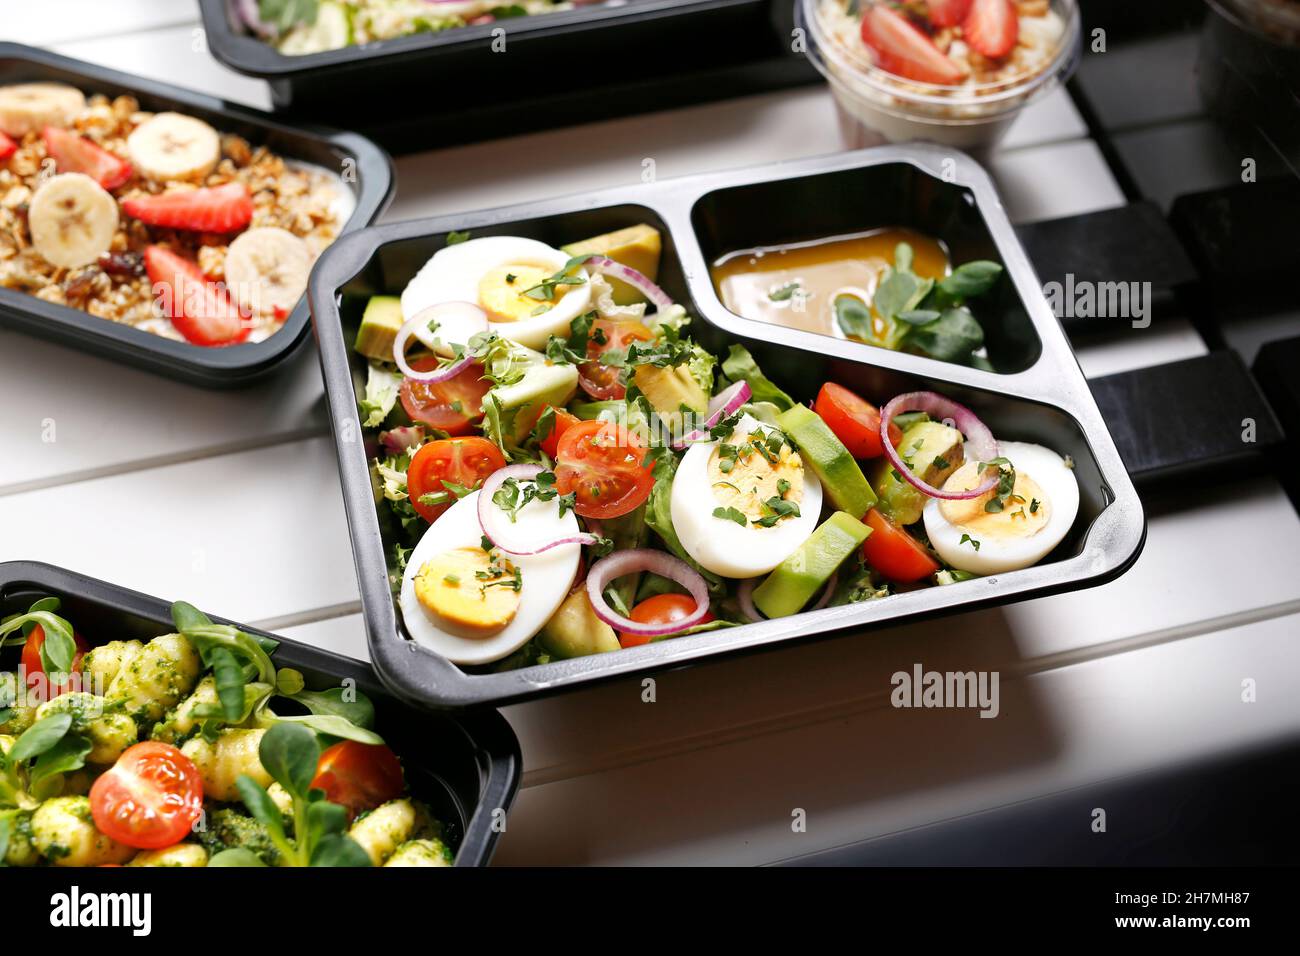 Boîte de régime avec salade d'œufs et d'avocats, repas appétissant à emporter.Plat prêt-à-emporter appétissant servi dans une boîte jetable.Photographie culinaire.y photog Banque D'Images